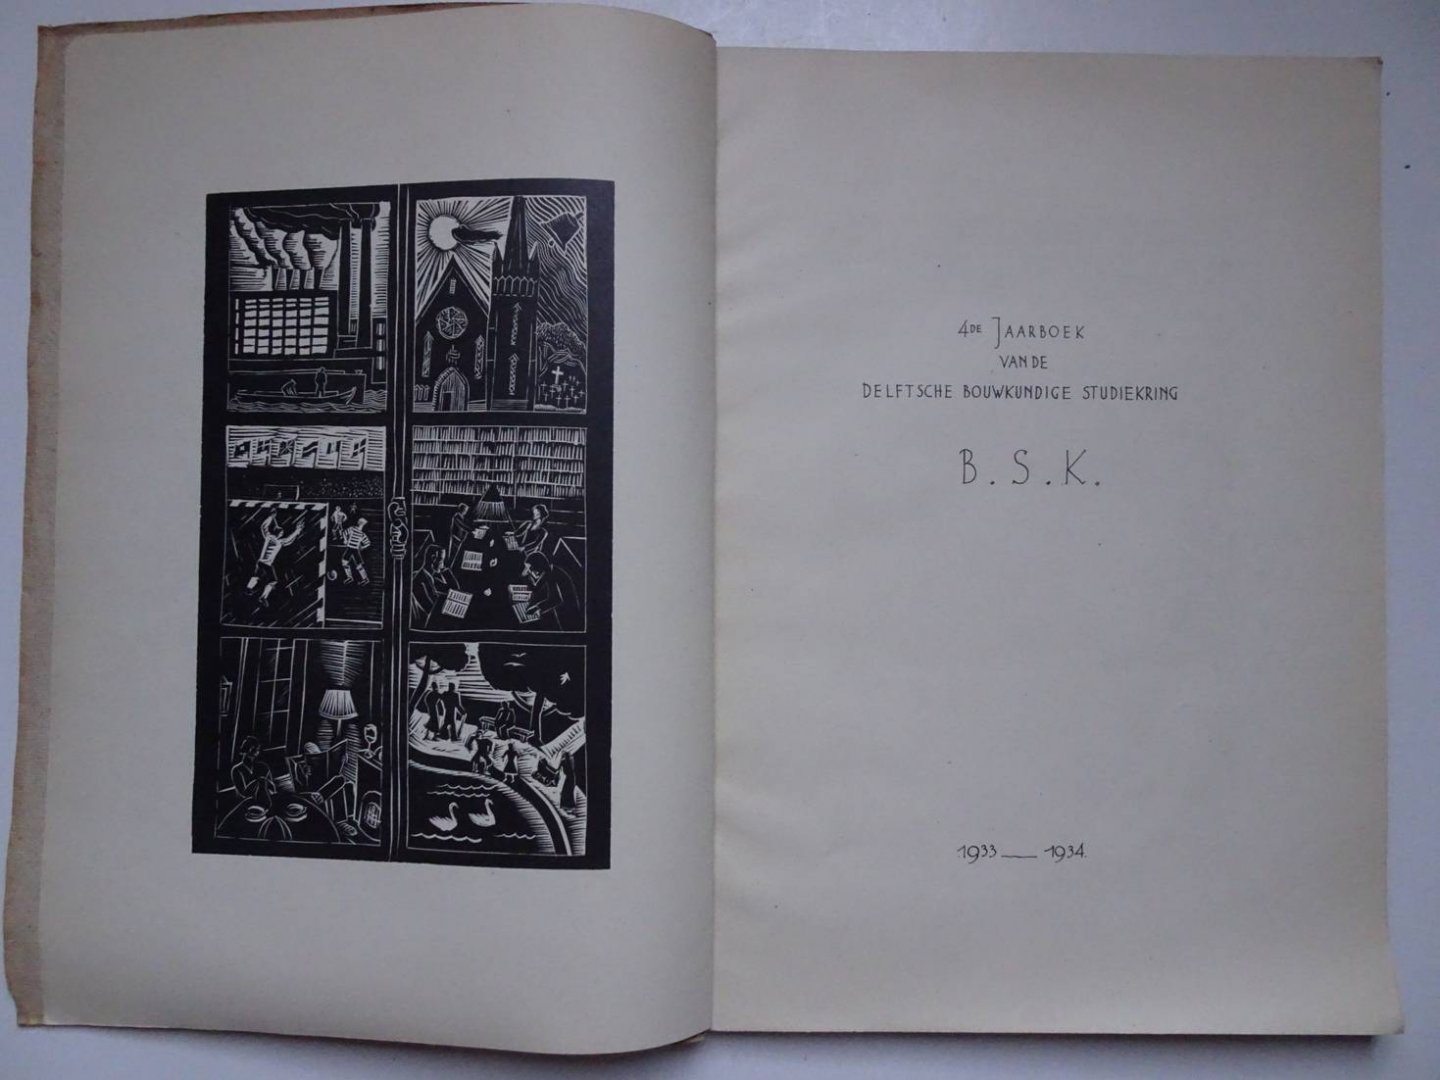 Berghoef, J.F., Granpré Moliere, M.J., Roland Holst, H., Embden, S.J. van, e.a.. - 4de Jaarboek van de Delftsche Bouwkundige Studiekring B.S.K. 1933-1934.